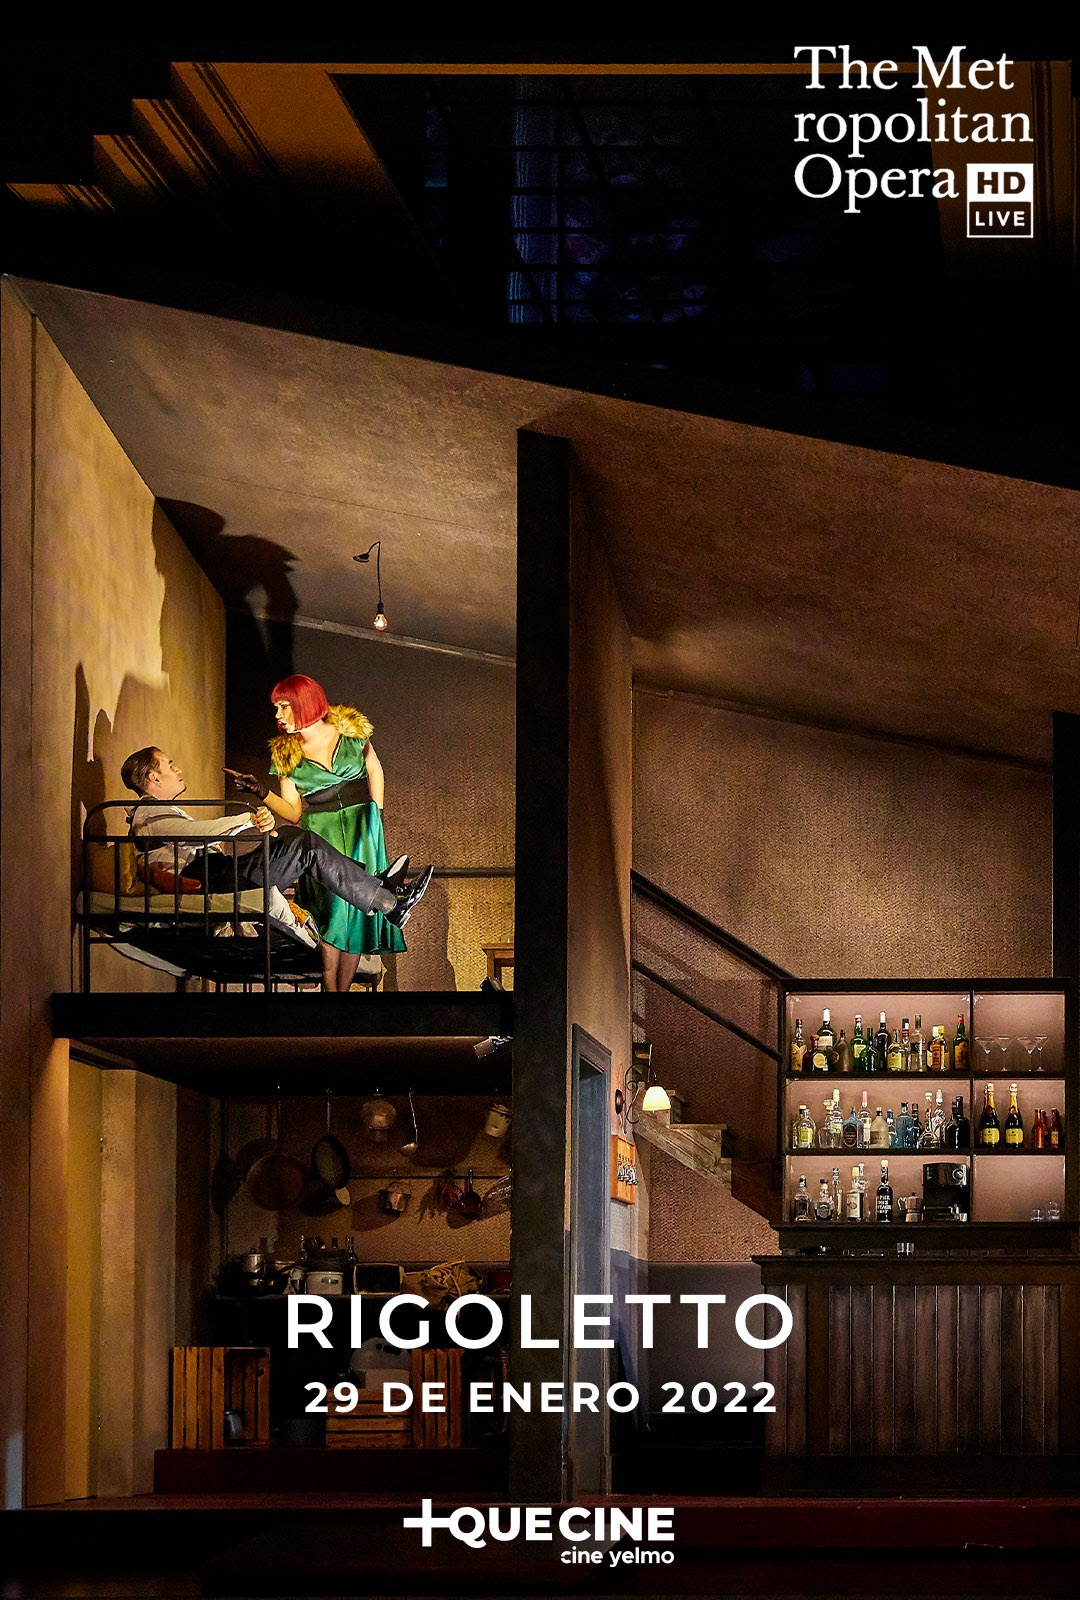 Cine Yelmo proyecta en exclusiva una nueva versión de la ópera Rigoletto de Verdi desde el MET de Nueva York